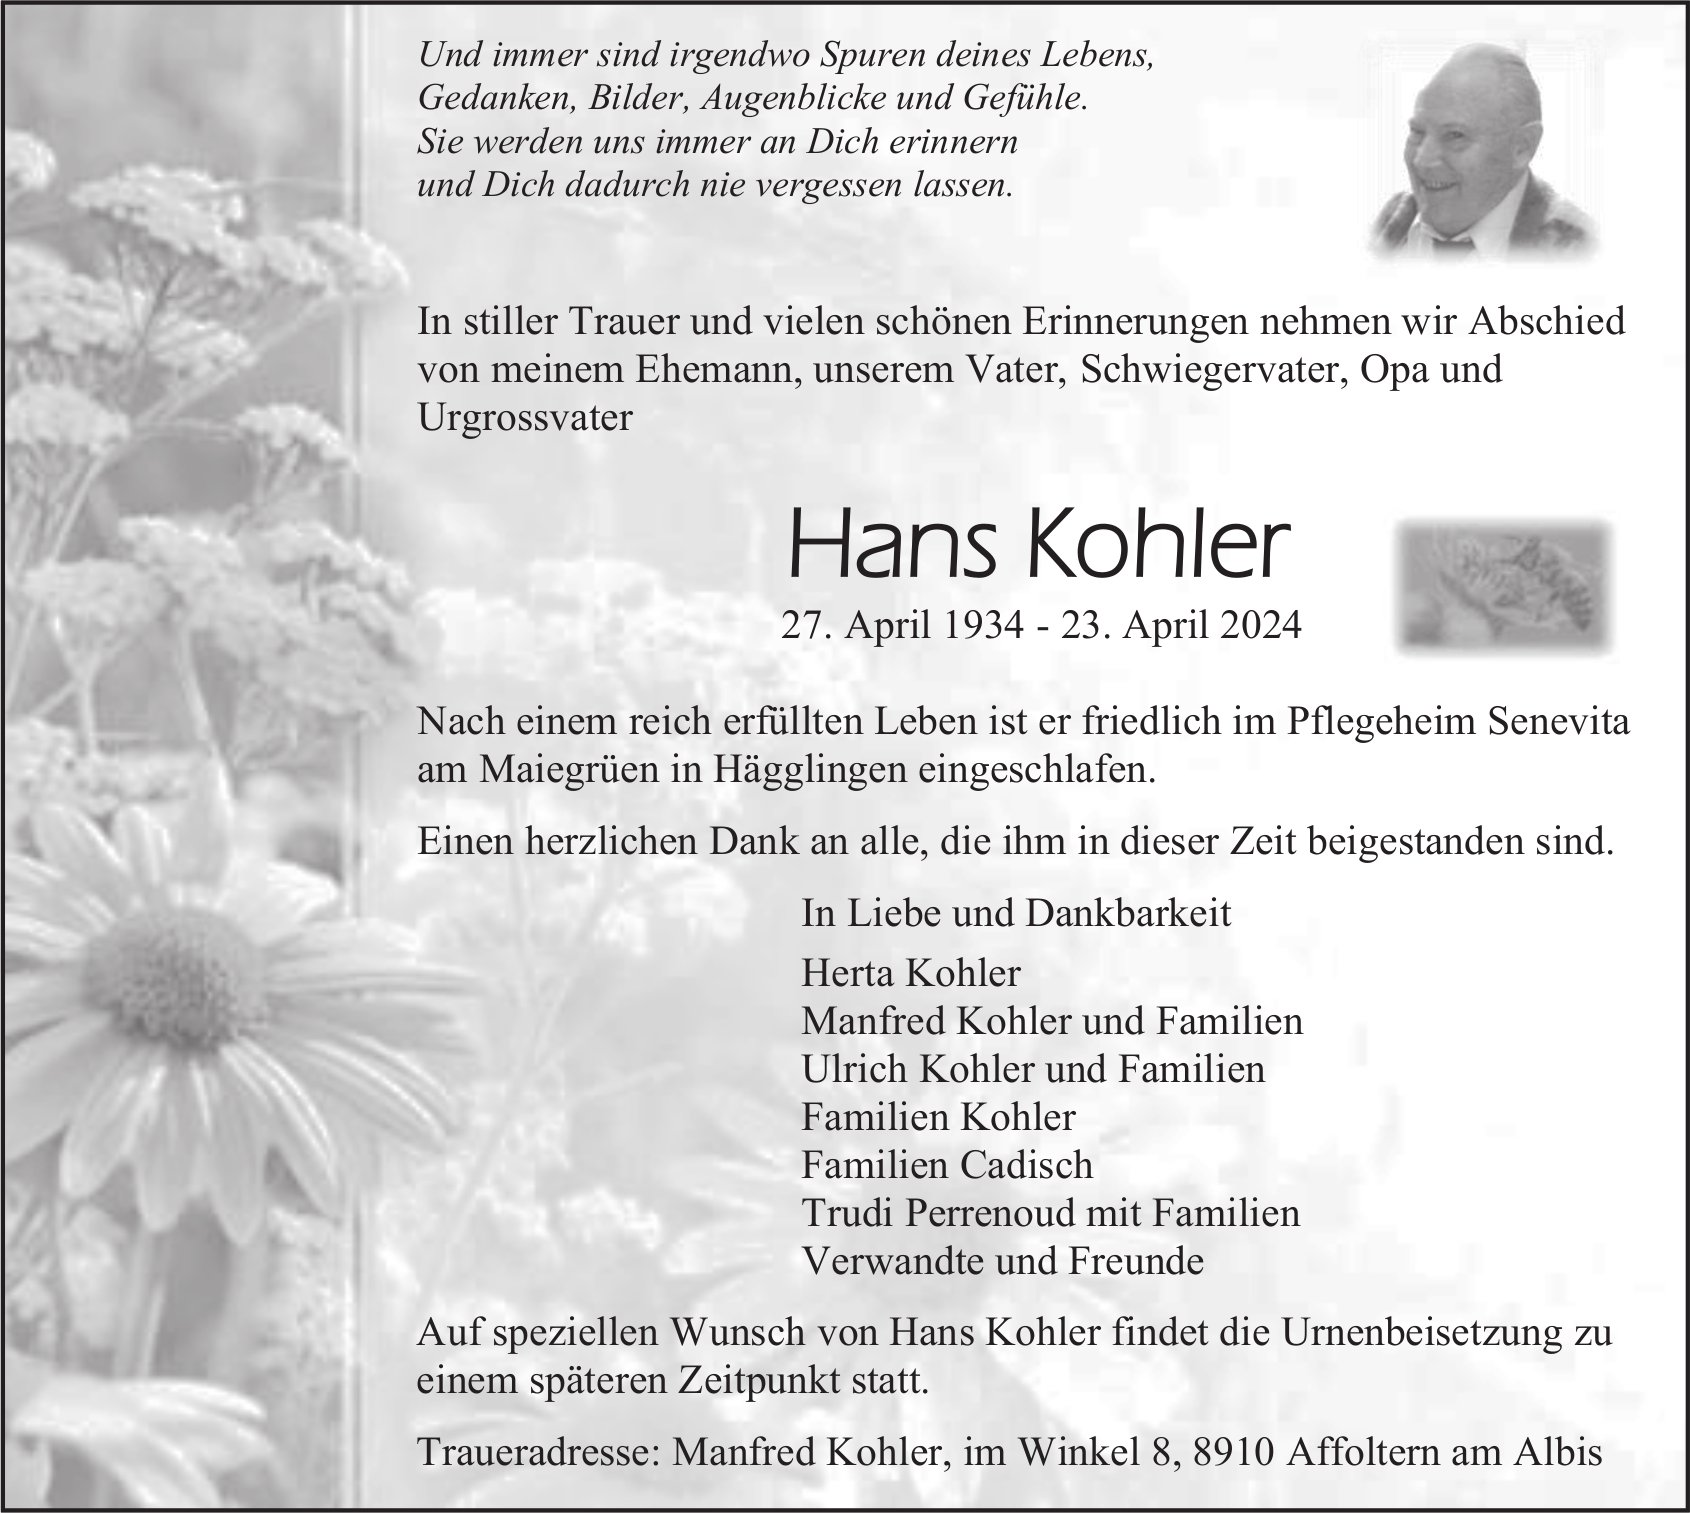 Hans Kohler, April 2024 / TA